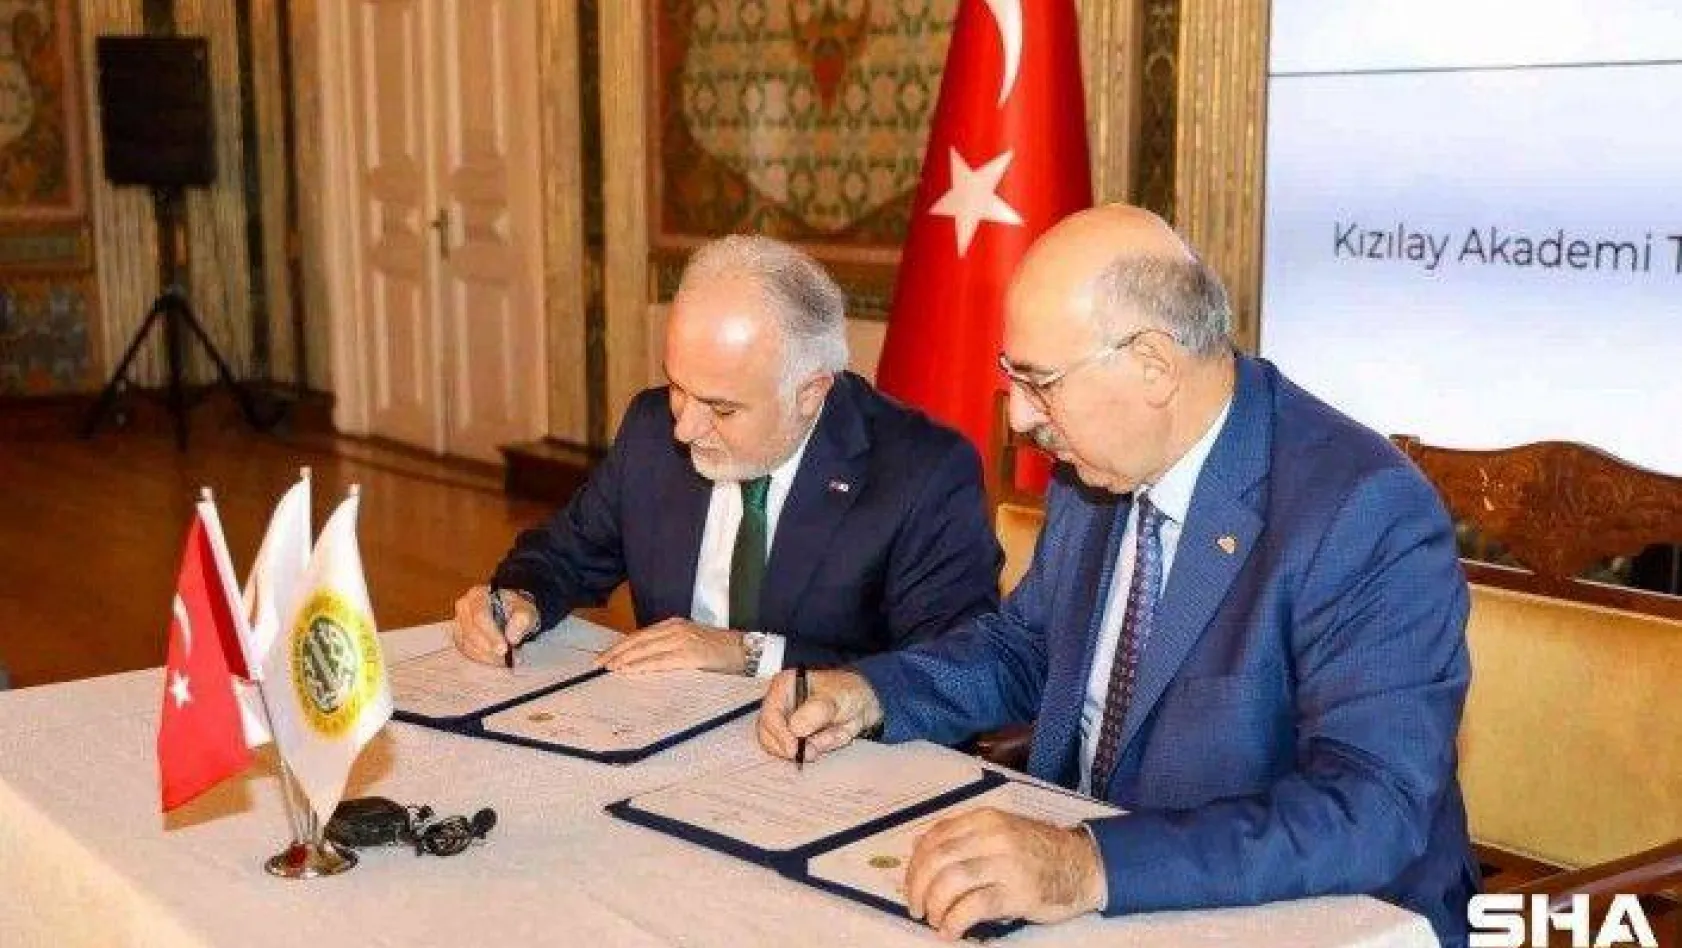 Türk Kızılay ile İstanbul Üniversitesi arasında önemli işbirliği